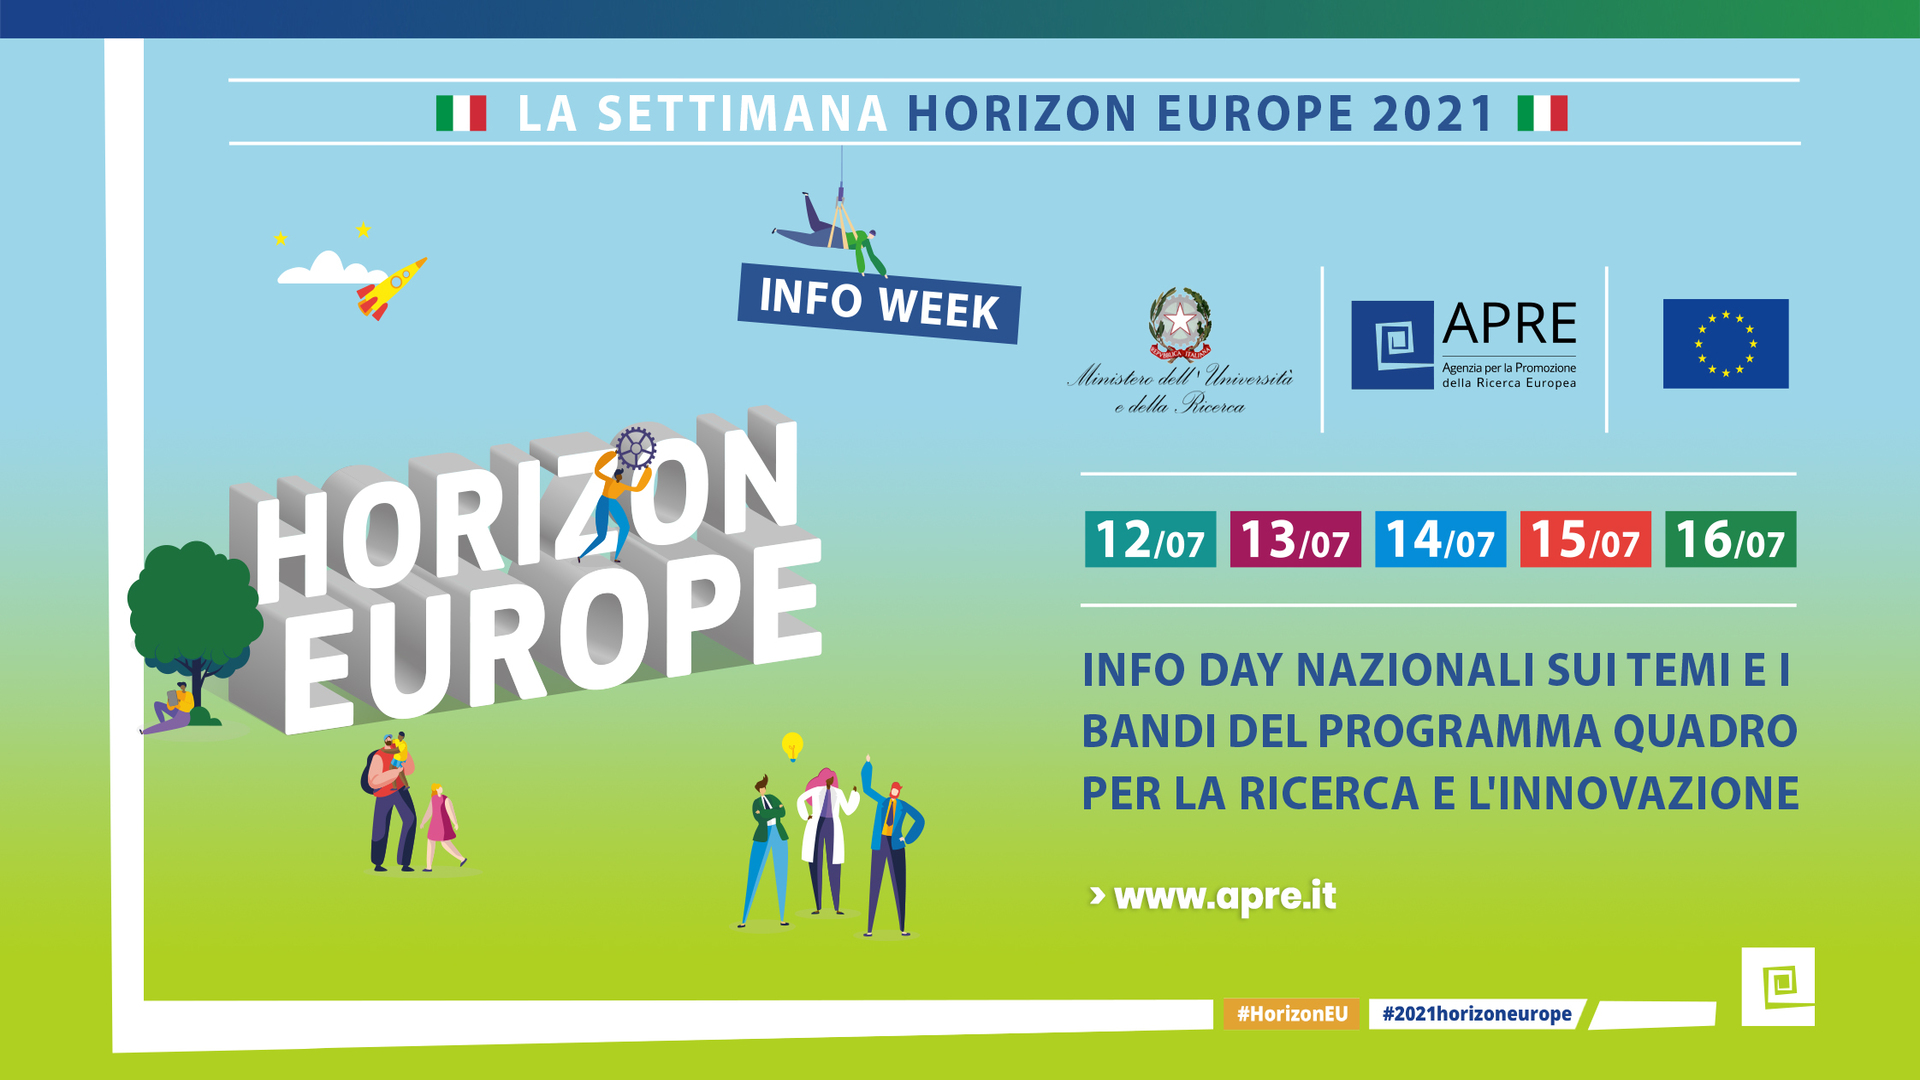 APRE dà il via alla Settimana HORIZON EUROPE italiana